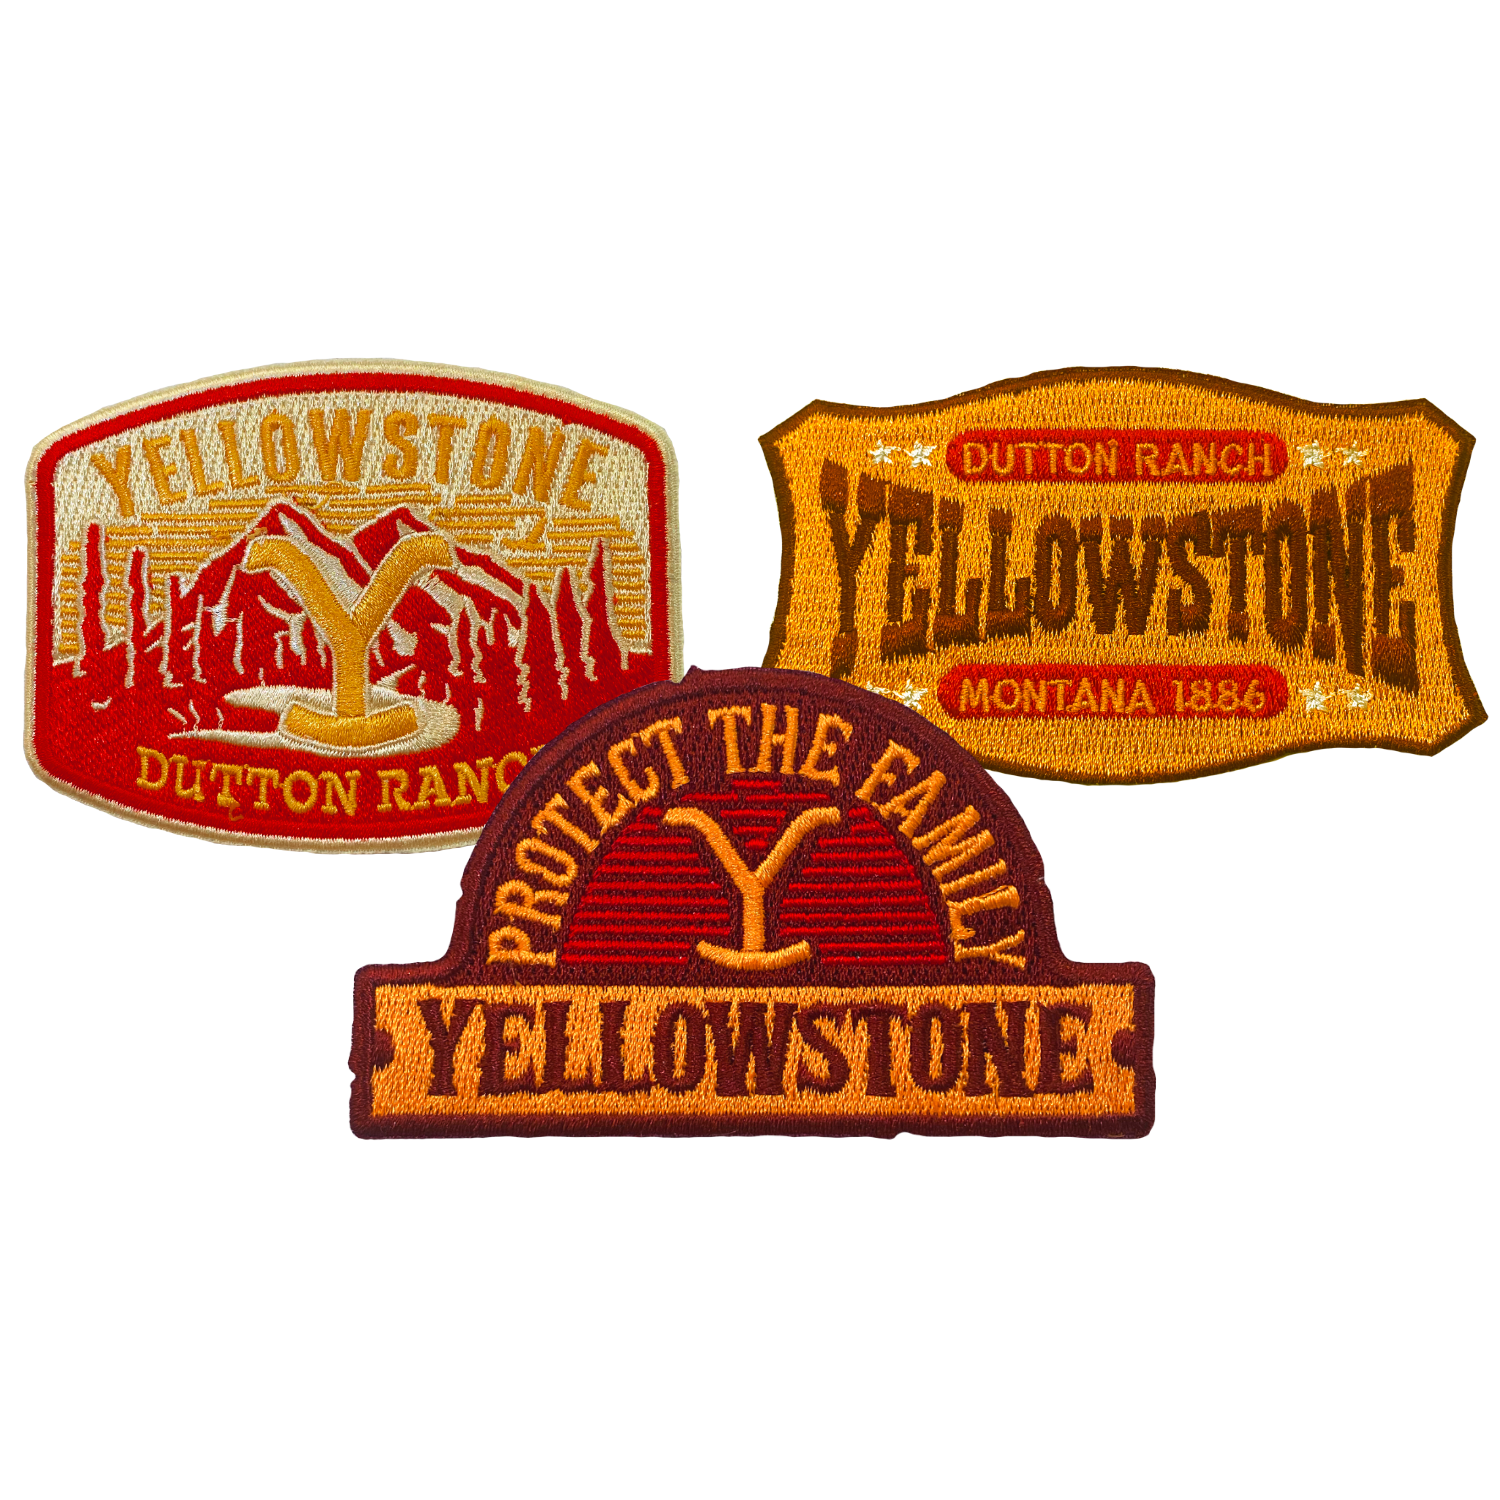 Yellowstone Parches Mochila Premium